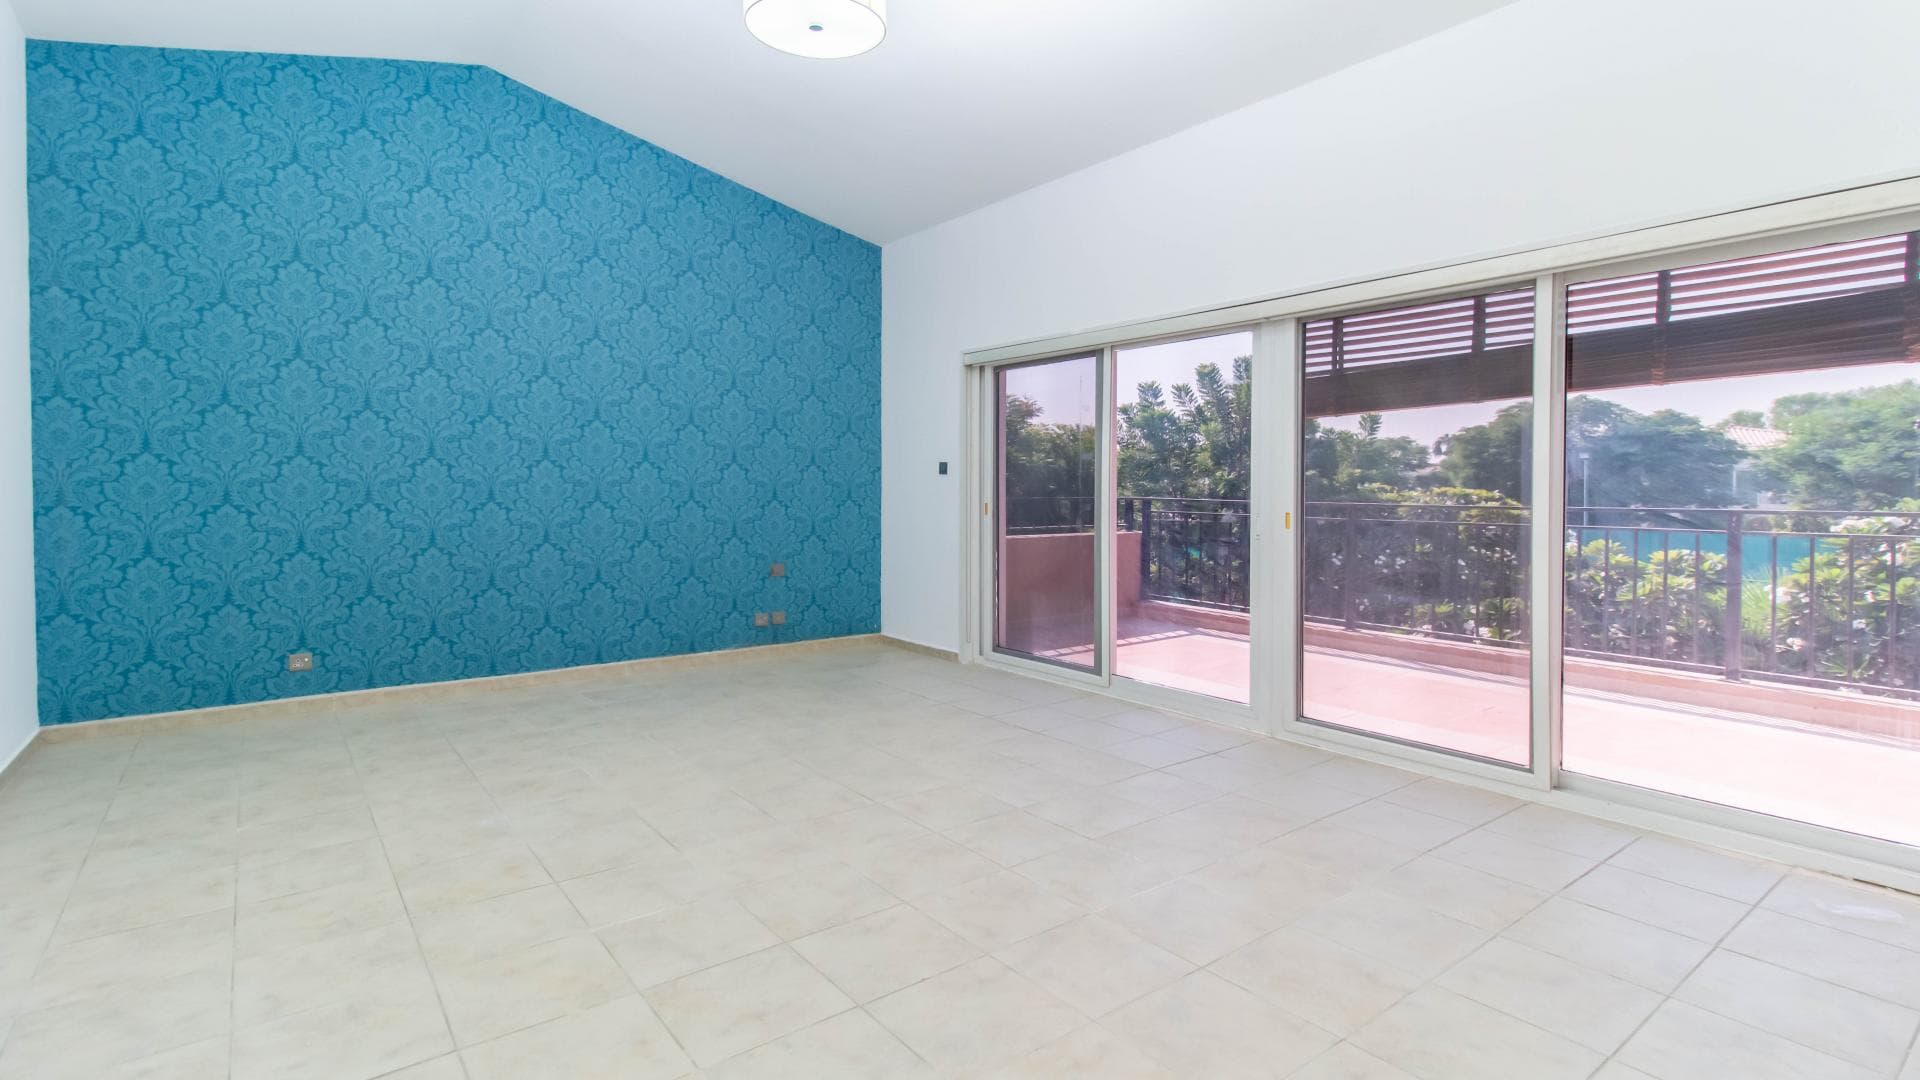 5 Bedroom Villa For Rent Al Thamam 36 Lp37795 1a3b723729ba7700.jpg